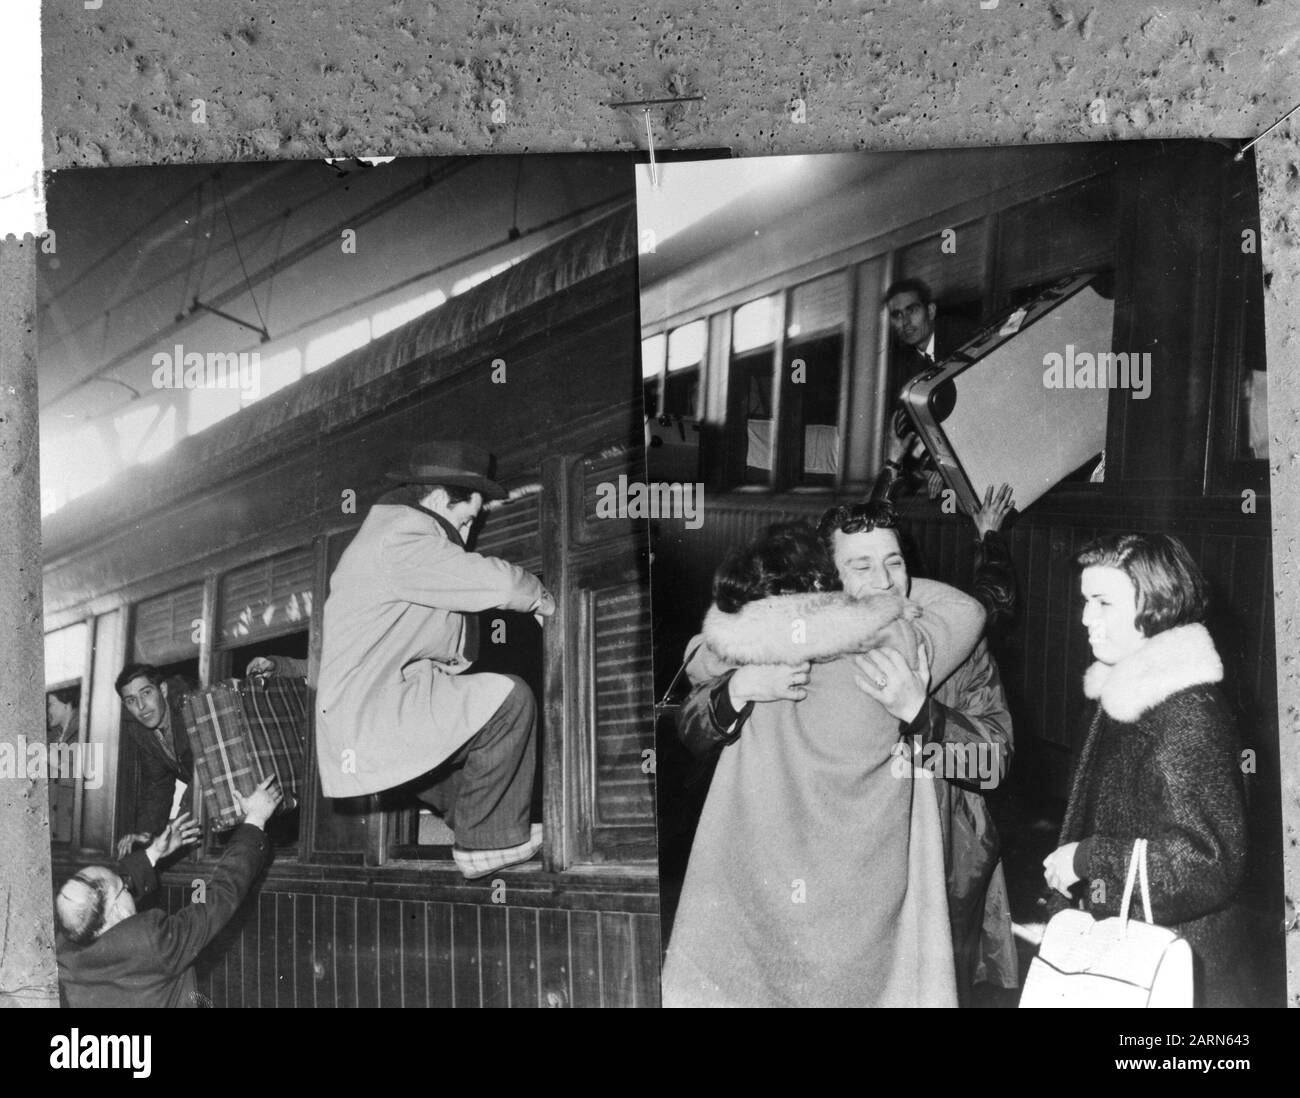 Festeggiamo il Natale a casa, gli operai spagnoli arrivano in treno in Spagna Data: 16 dicembre 1964 Località: Spagna Parole Chiave: Operai, natale, treni Foto Stock